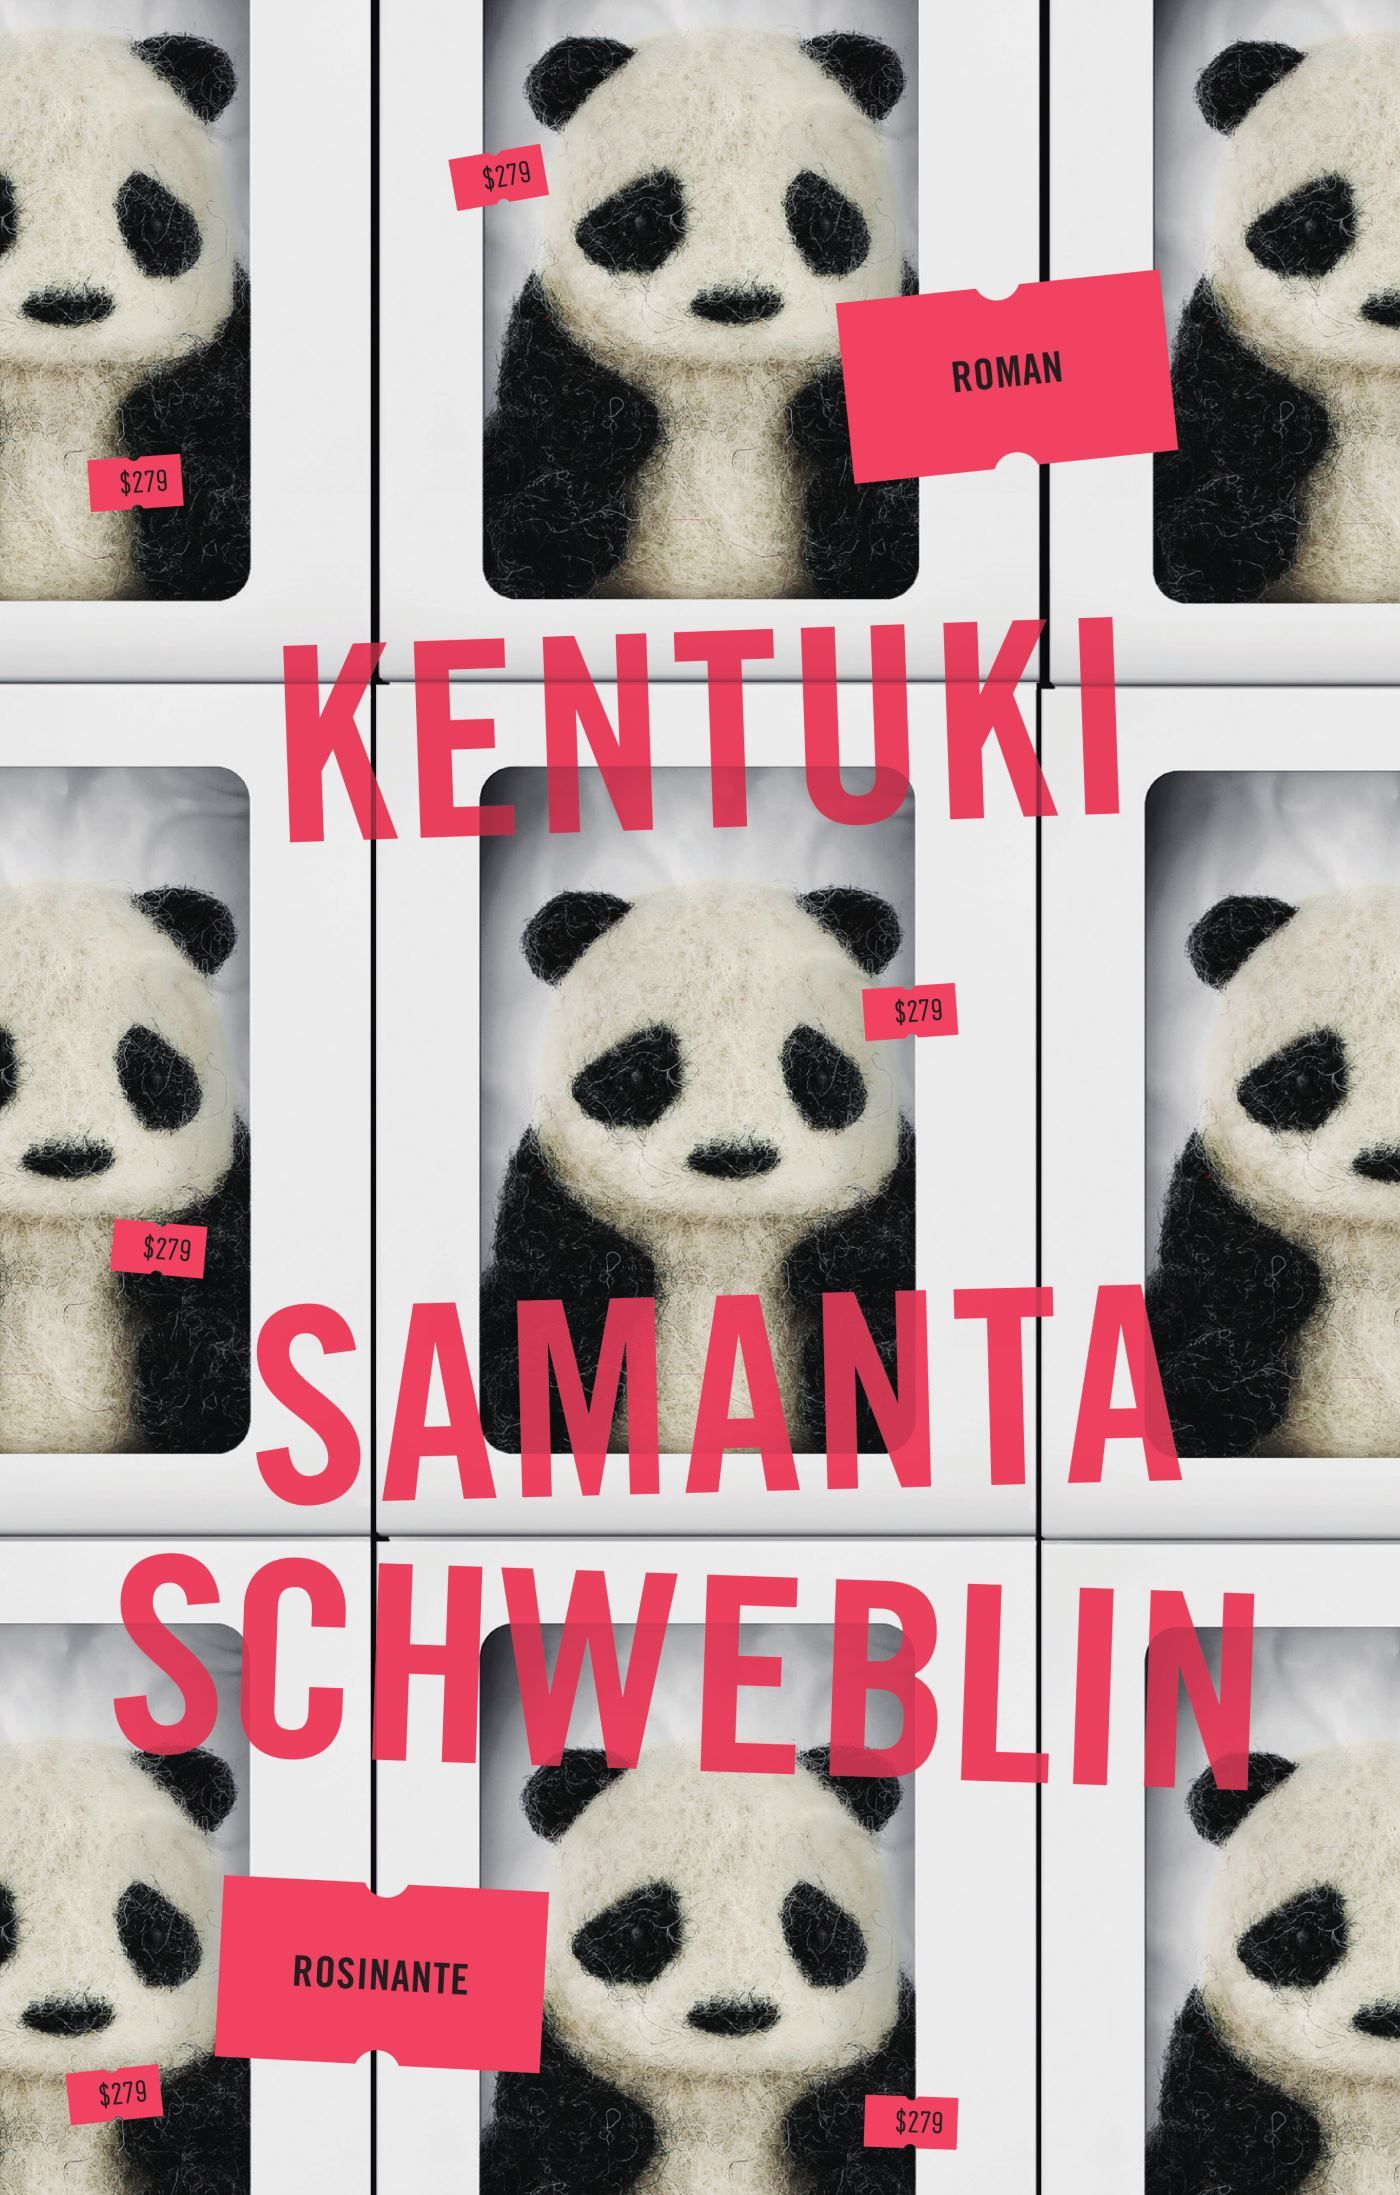 Kentuki, lydbog af Samanta Schweblin